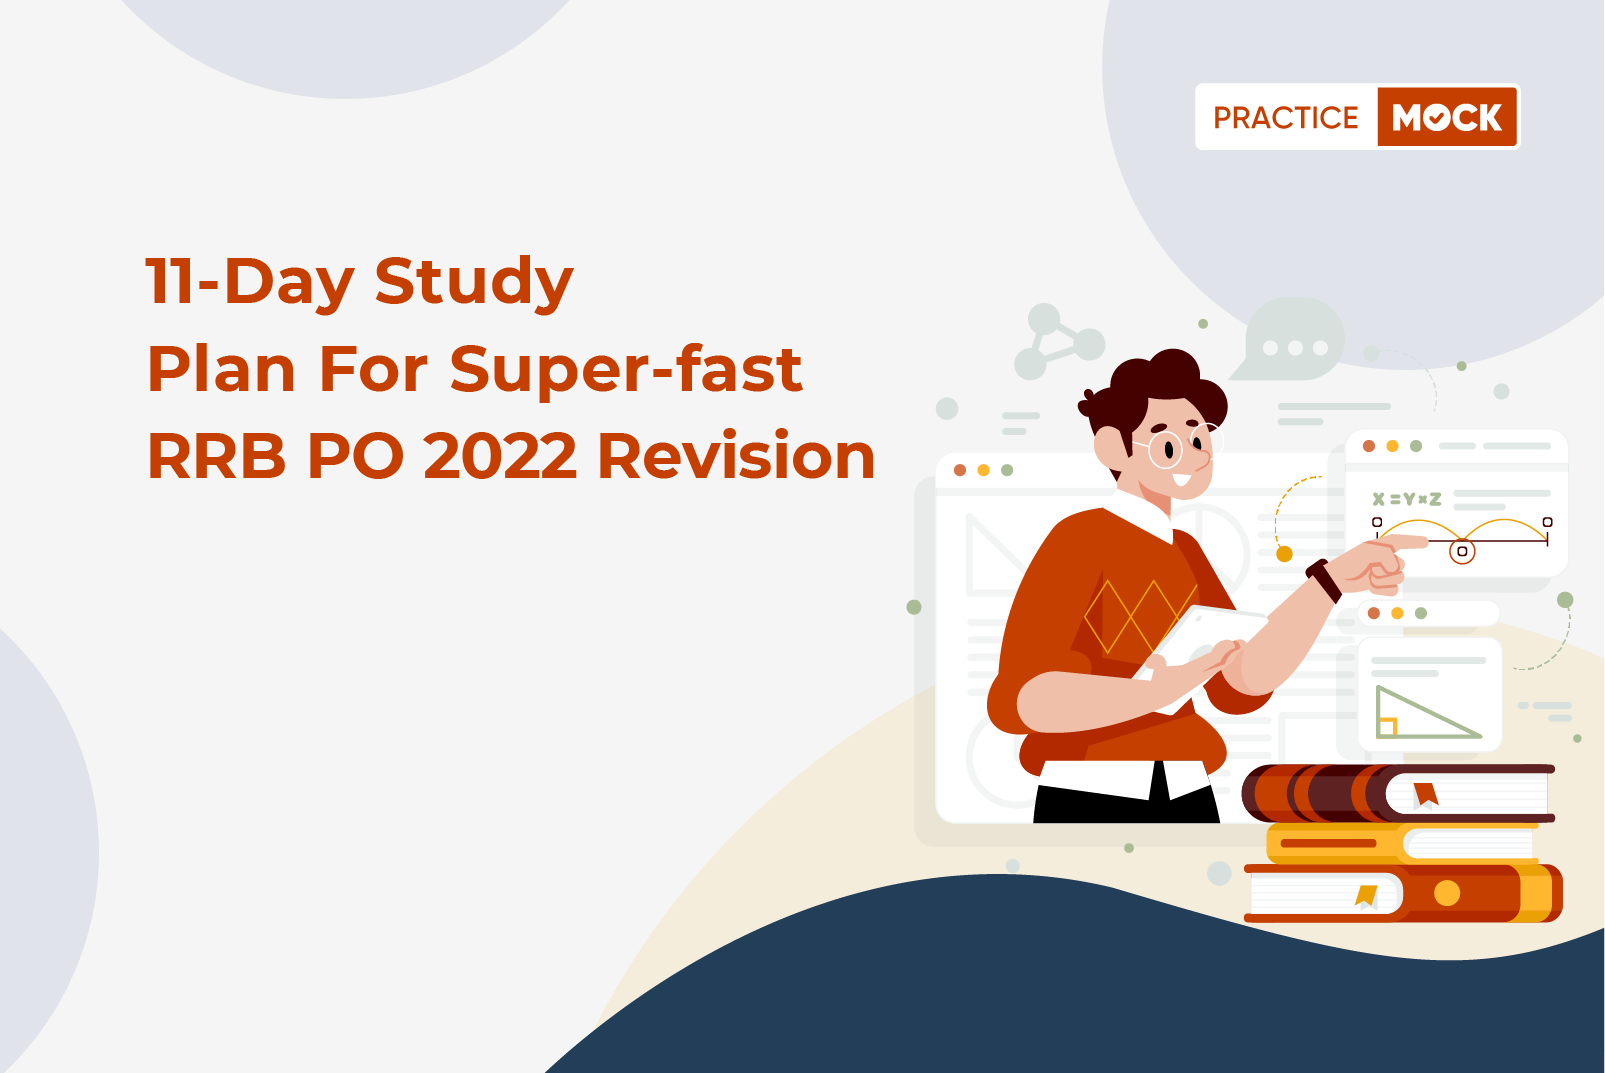 11 Days Mock Test Challenge for Super-fast RRB PO 2022 Revision